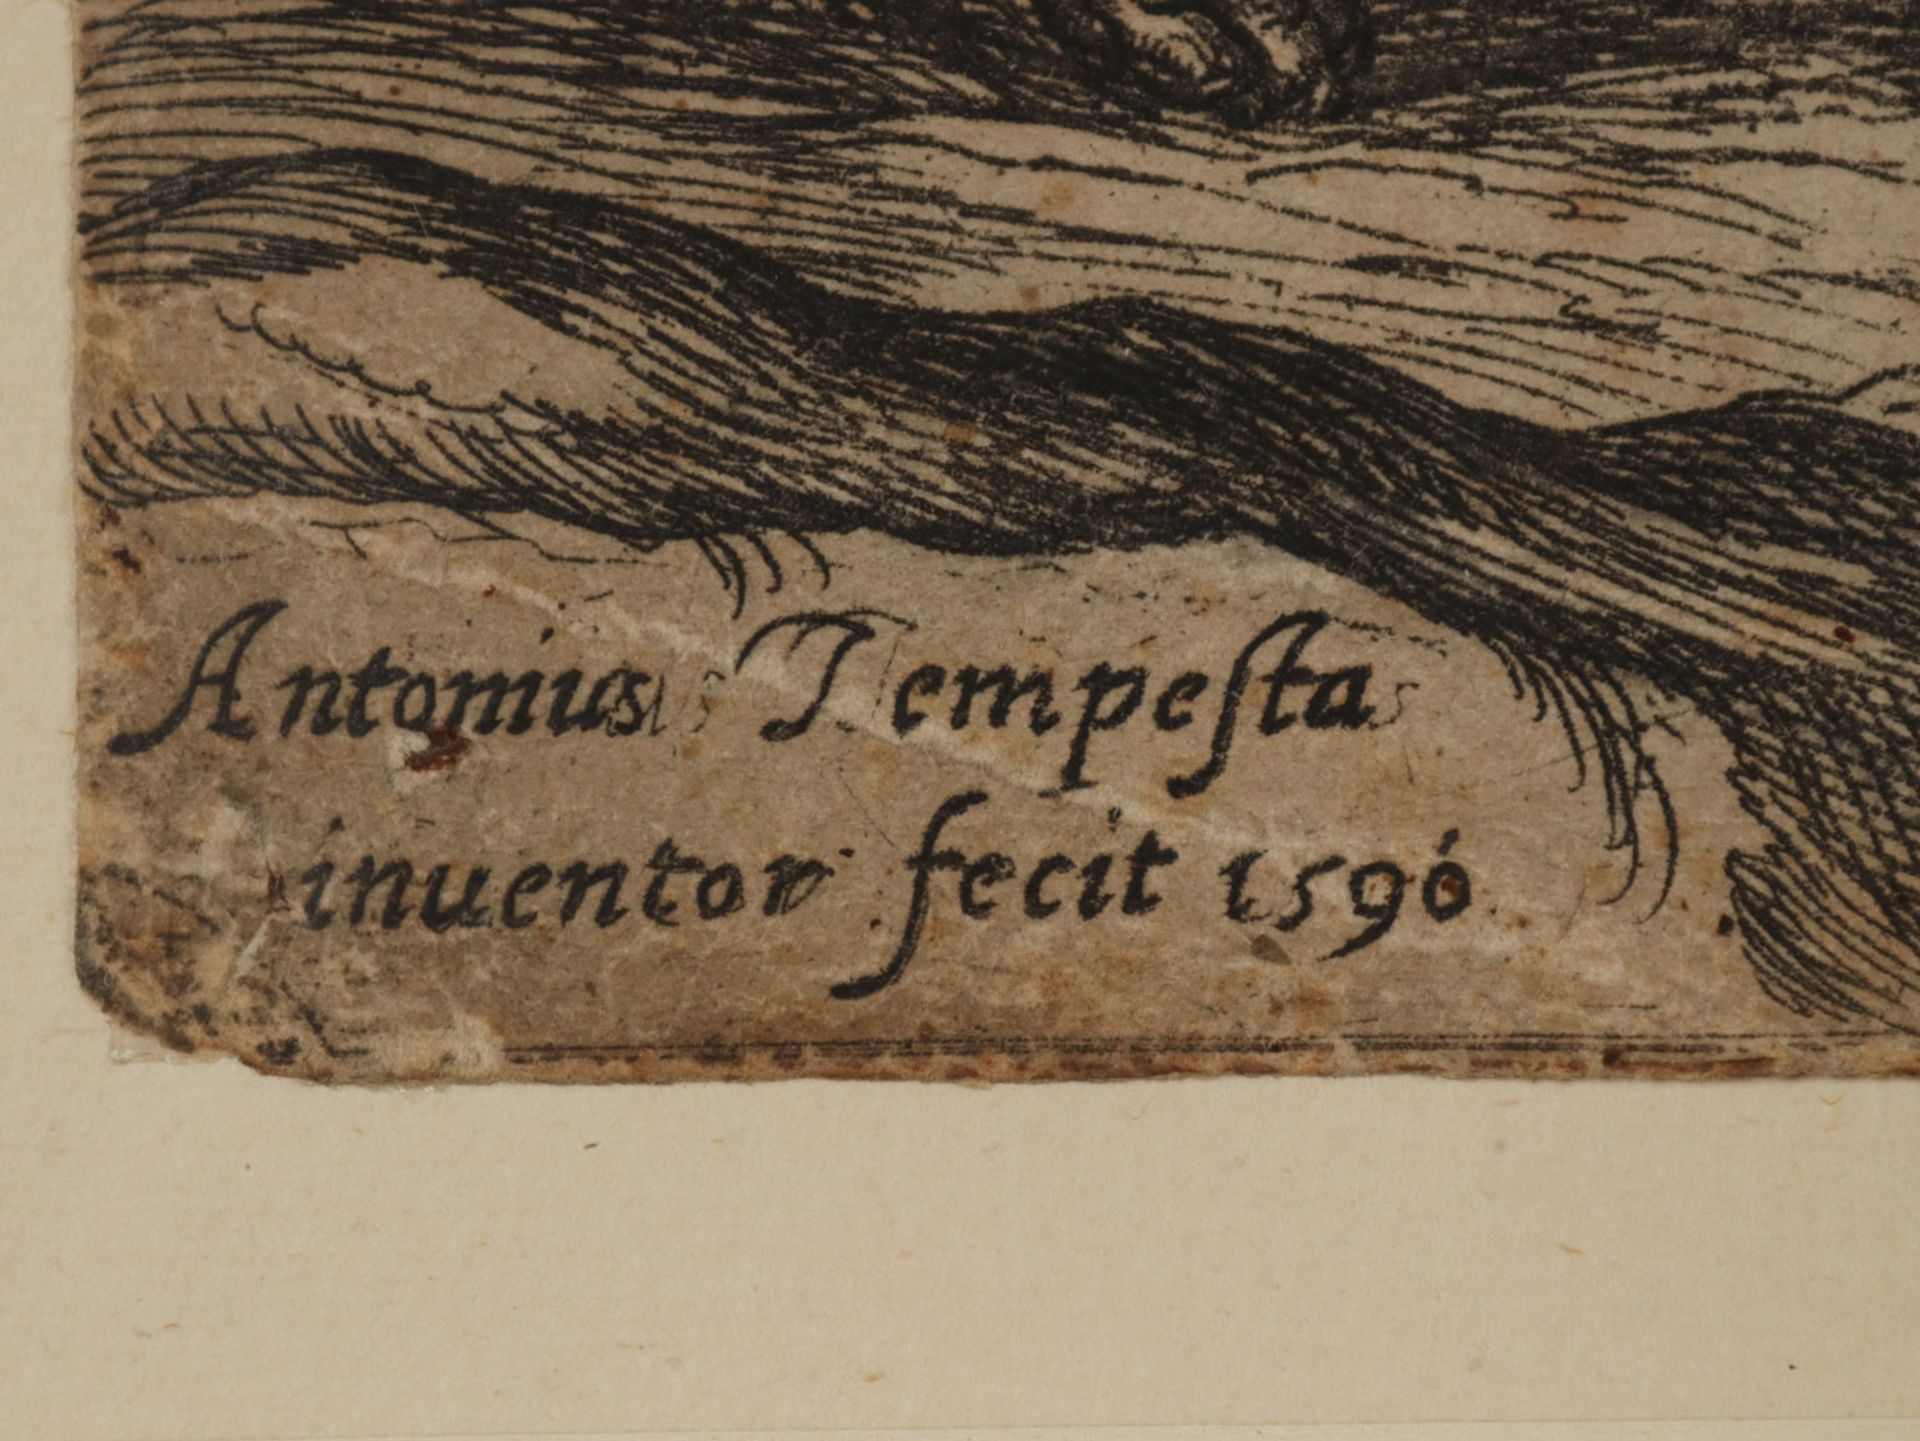 Tempesta, Antonio - Image 17 of 19